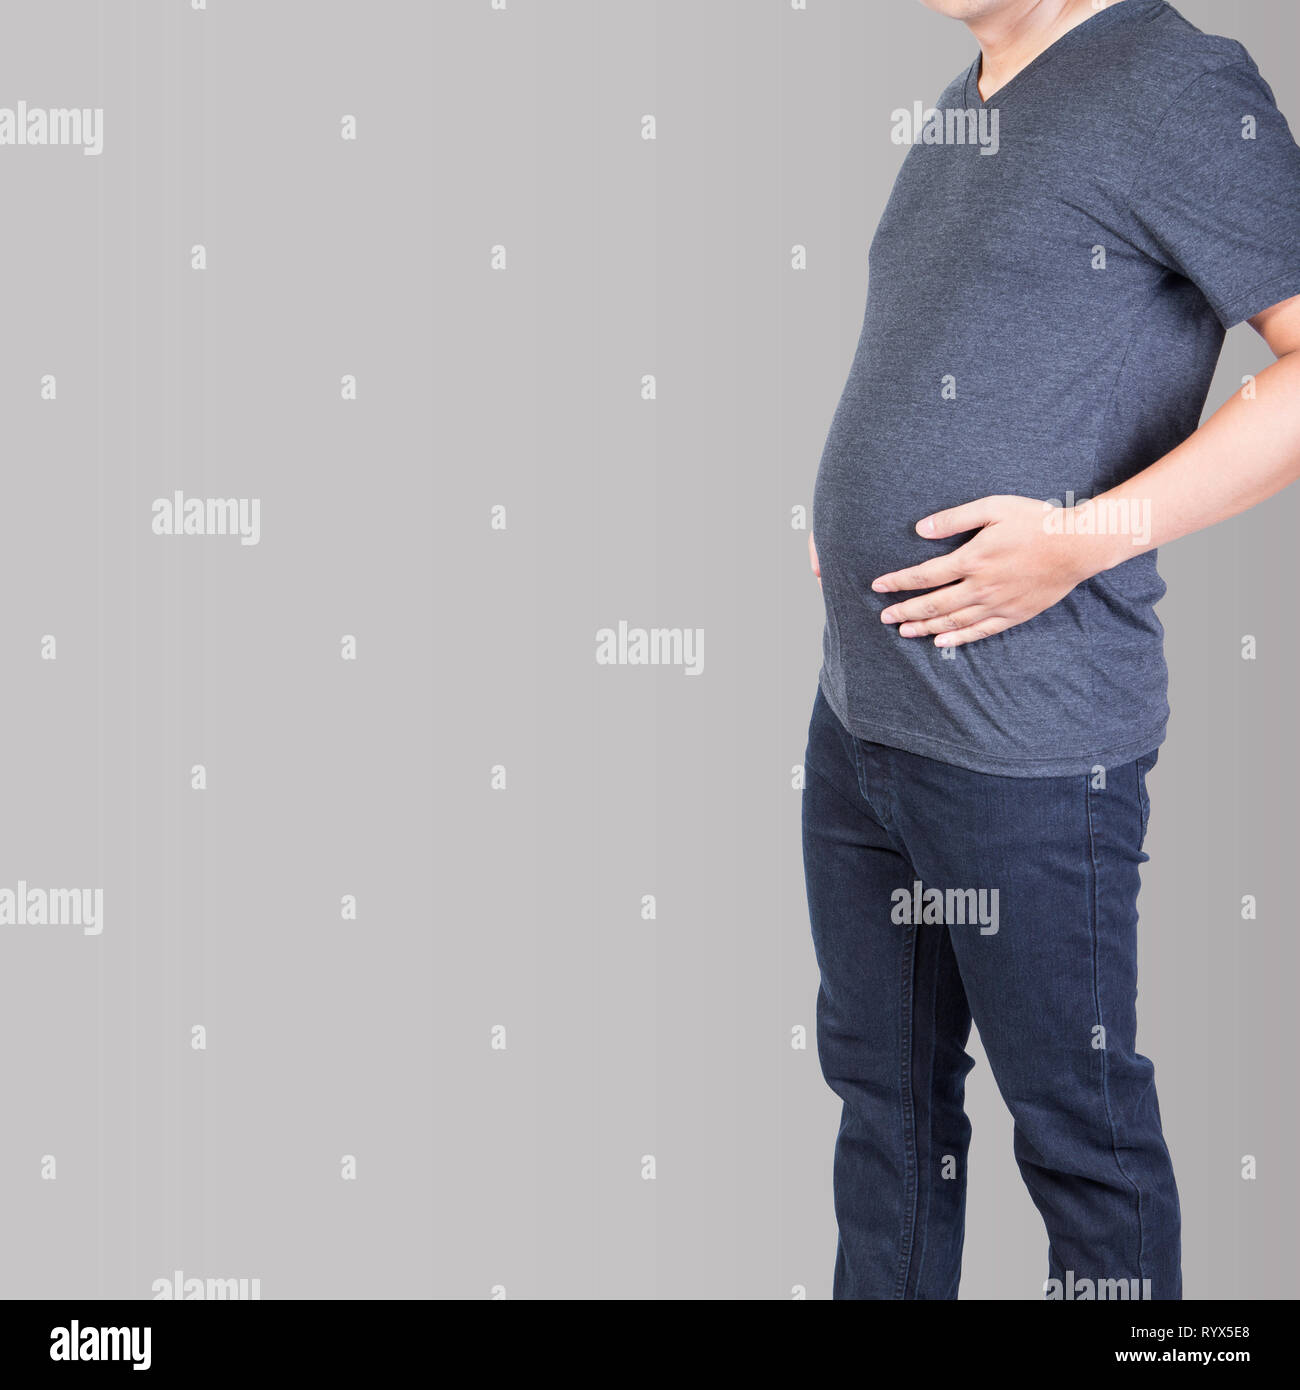 Fetter Mann mit Bauch Fett überschüssige Hand auf Bauch isoliert auf grauem Hintergrund Stockfoto